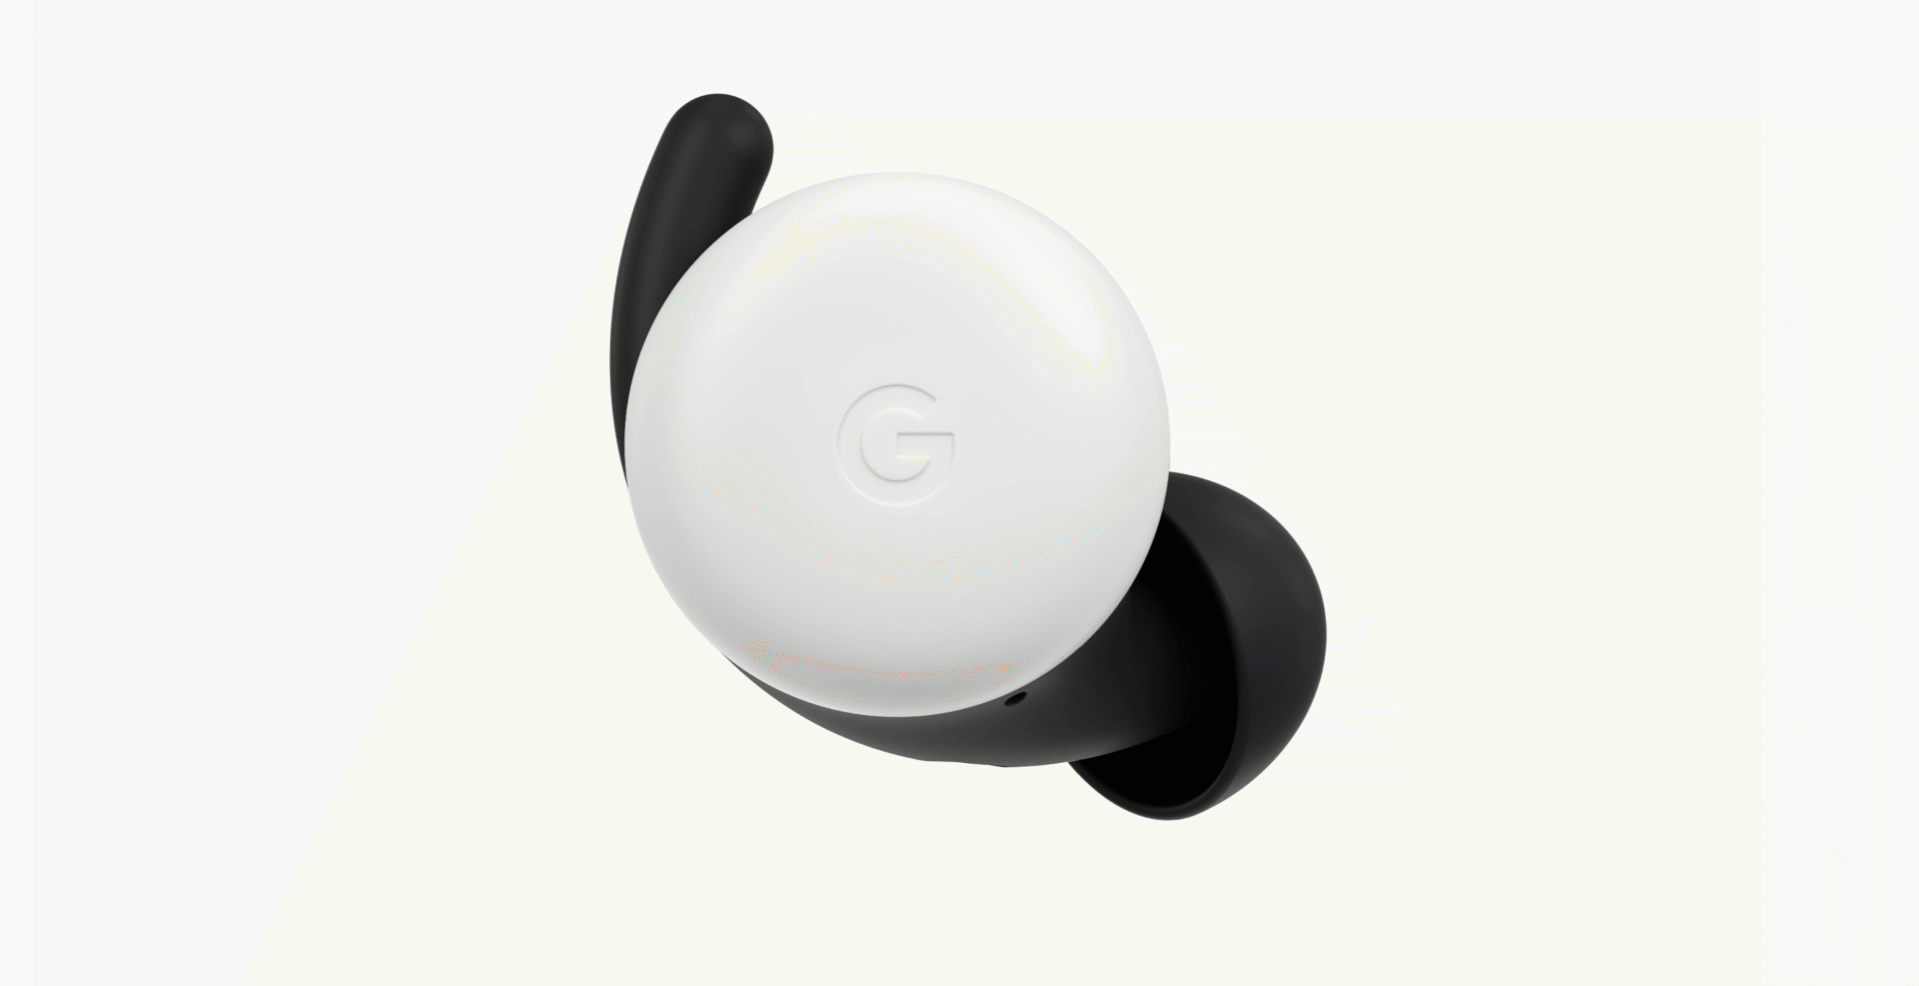 Los nuevos auriculares de Google traen un diseño mucho más ergonómico y funcional.